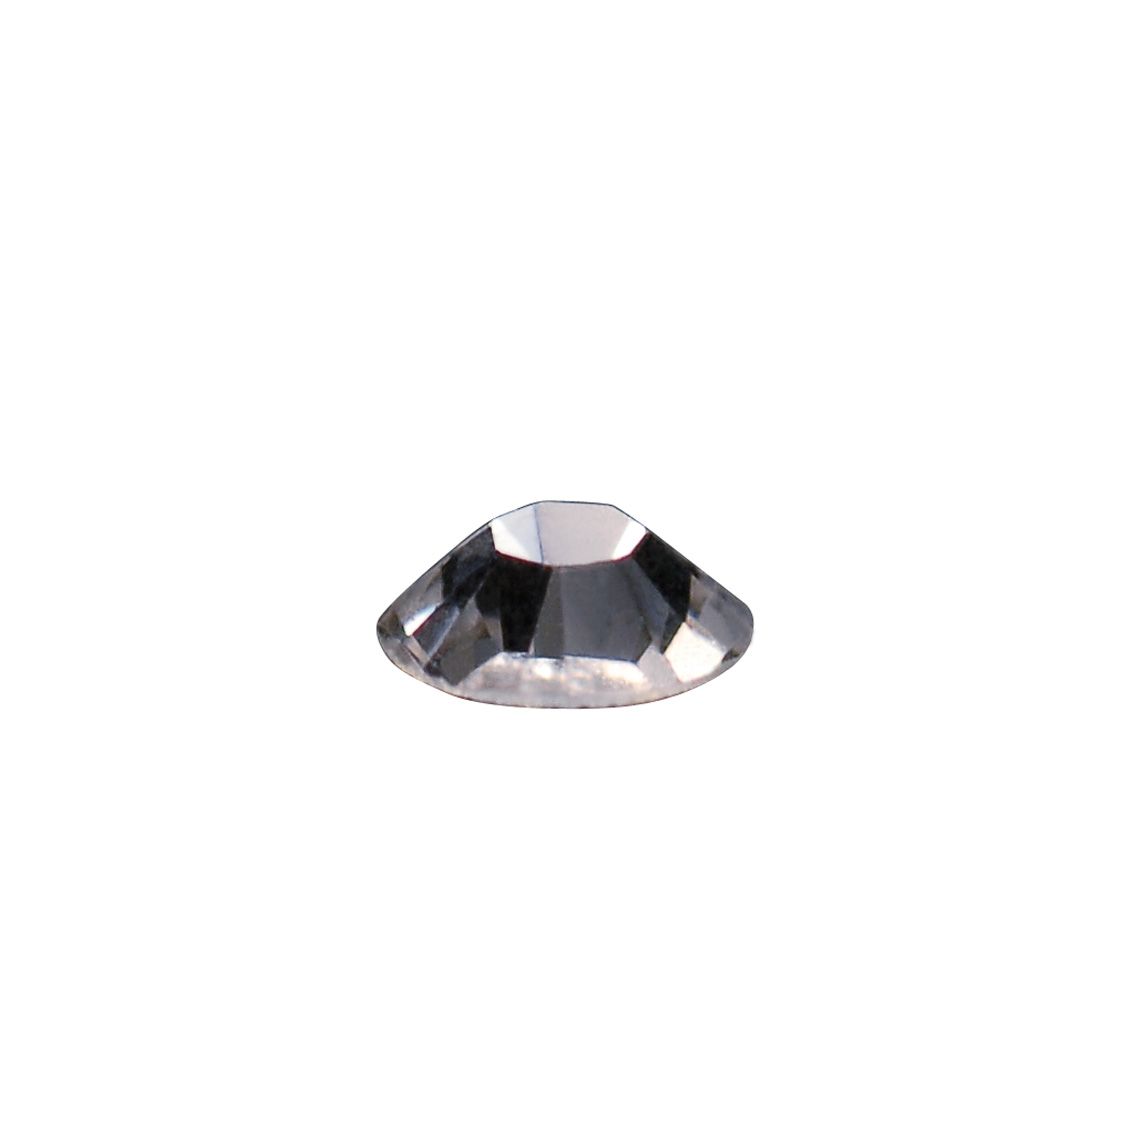 Swarovski® Kristalle für Nailart Kristallgröße SS6 1440 Stk.